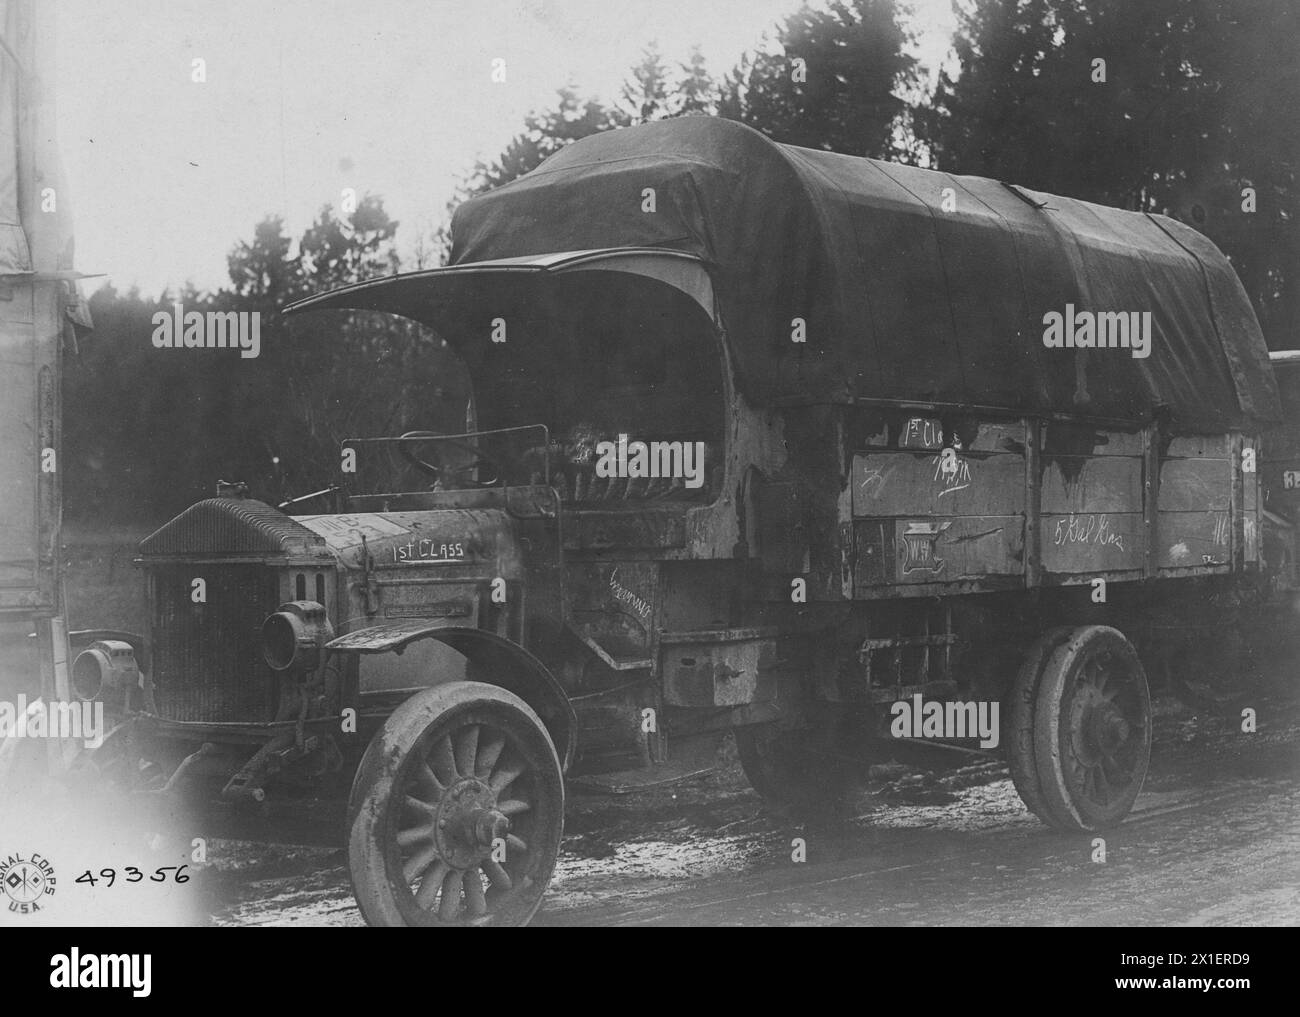 Un camion Pierce Arrow catturato dai tedeschi dagli inglesi fu poi consegnato agli americani dopo la firma dell'armistizio. Visto qui a Norschbach, Germania, ca. 1918 Foto Stock